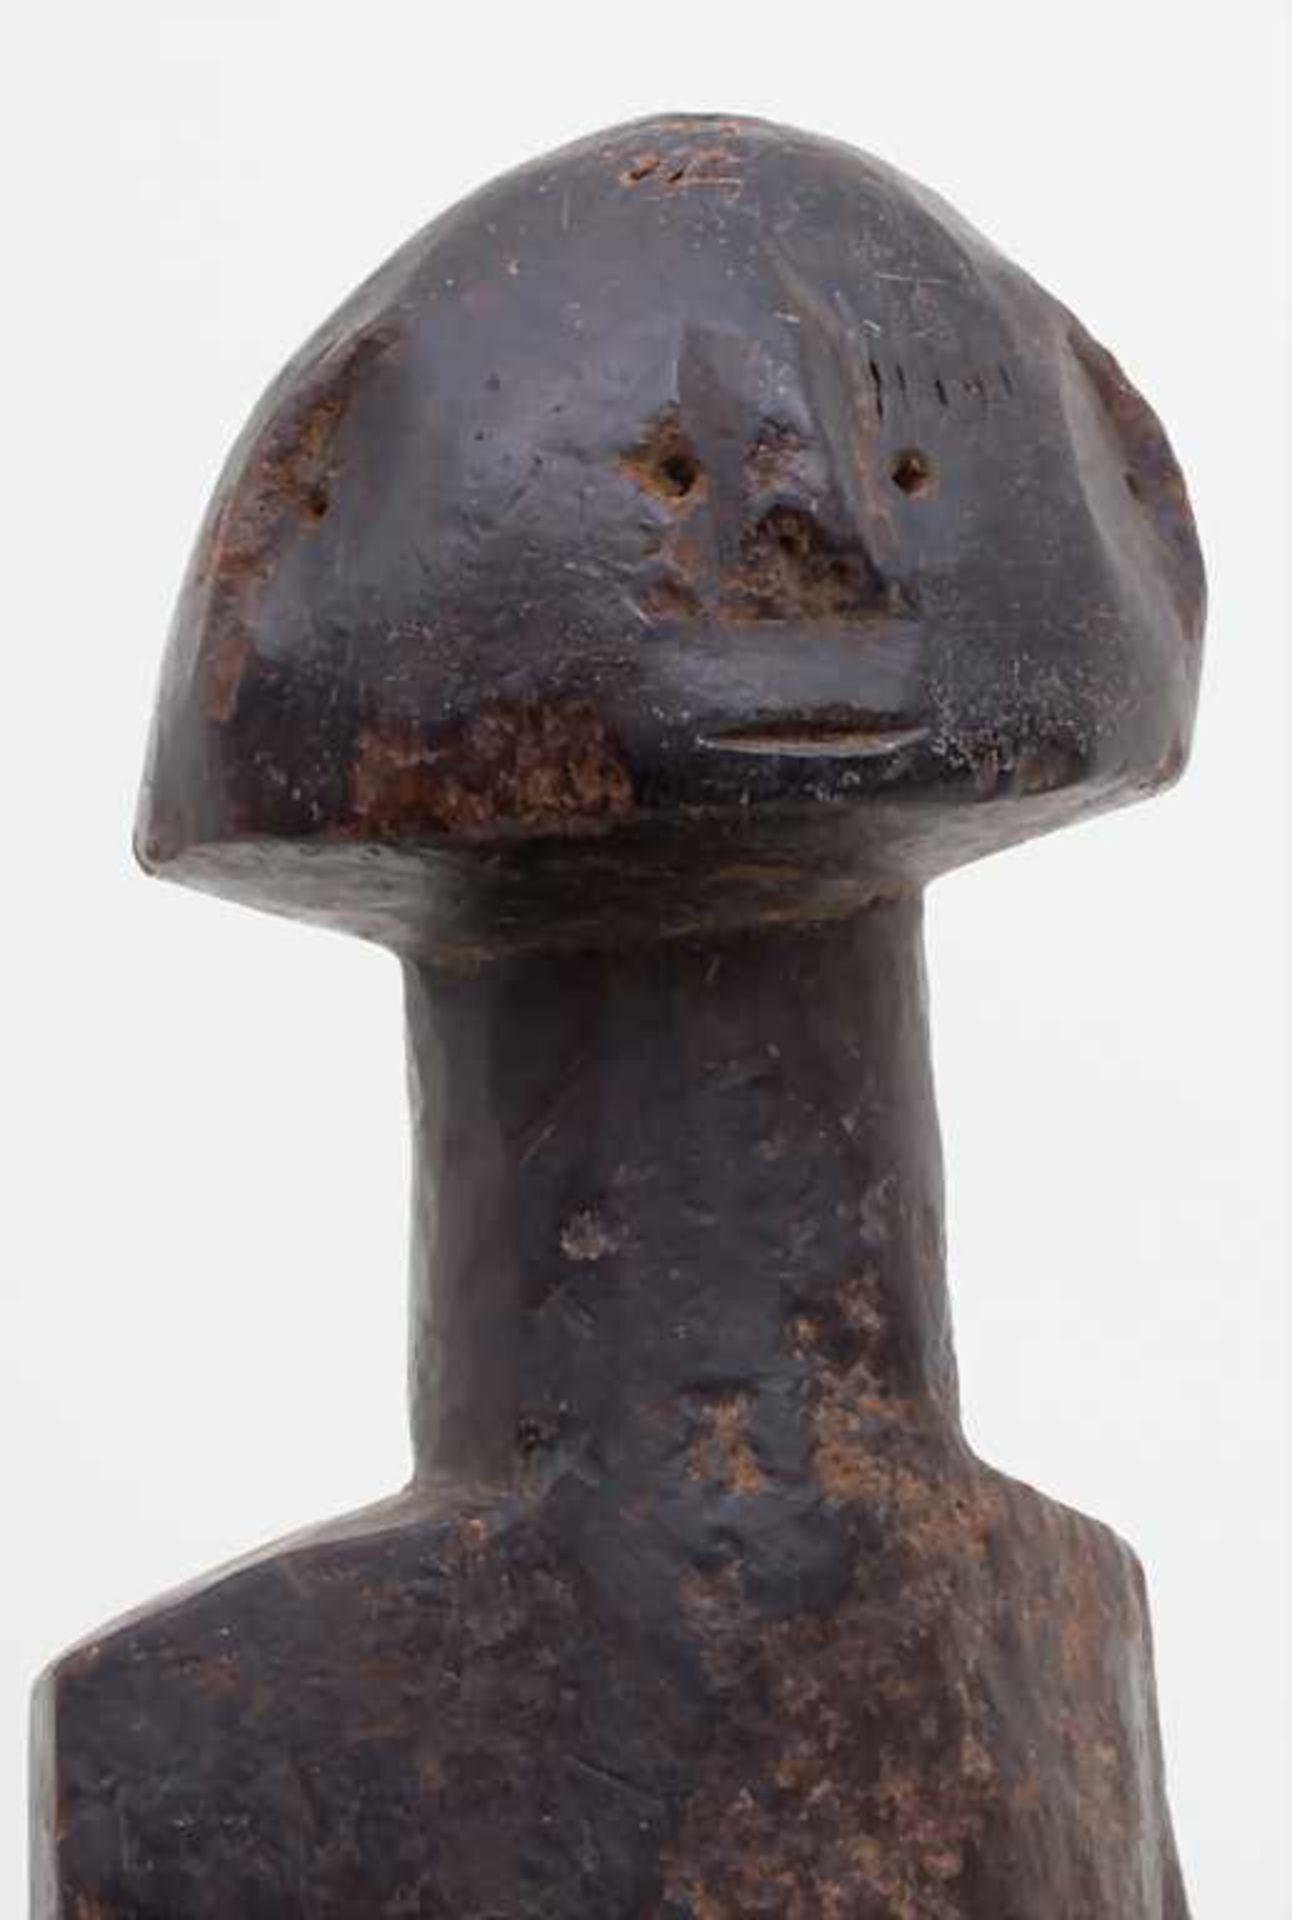 Ahnenfigur / An ancestors figurine, Bagirmi, Benue, NigeriaMaterial: Holz, dunkelbraun patiniert, - Bild 4 aus 4